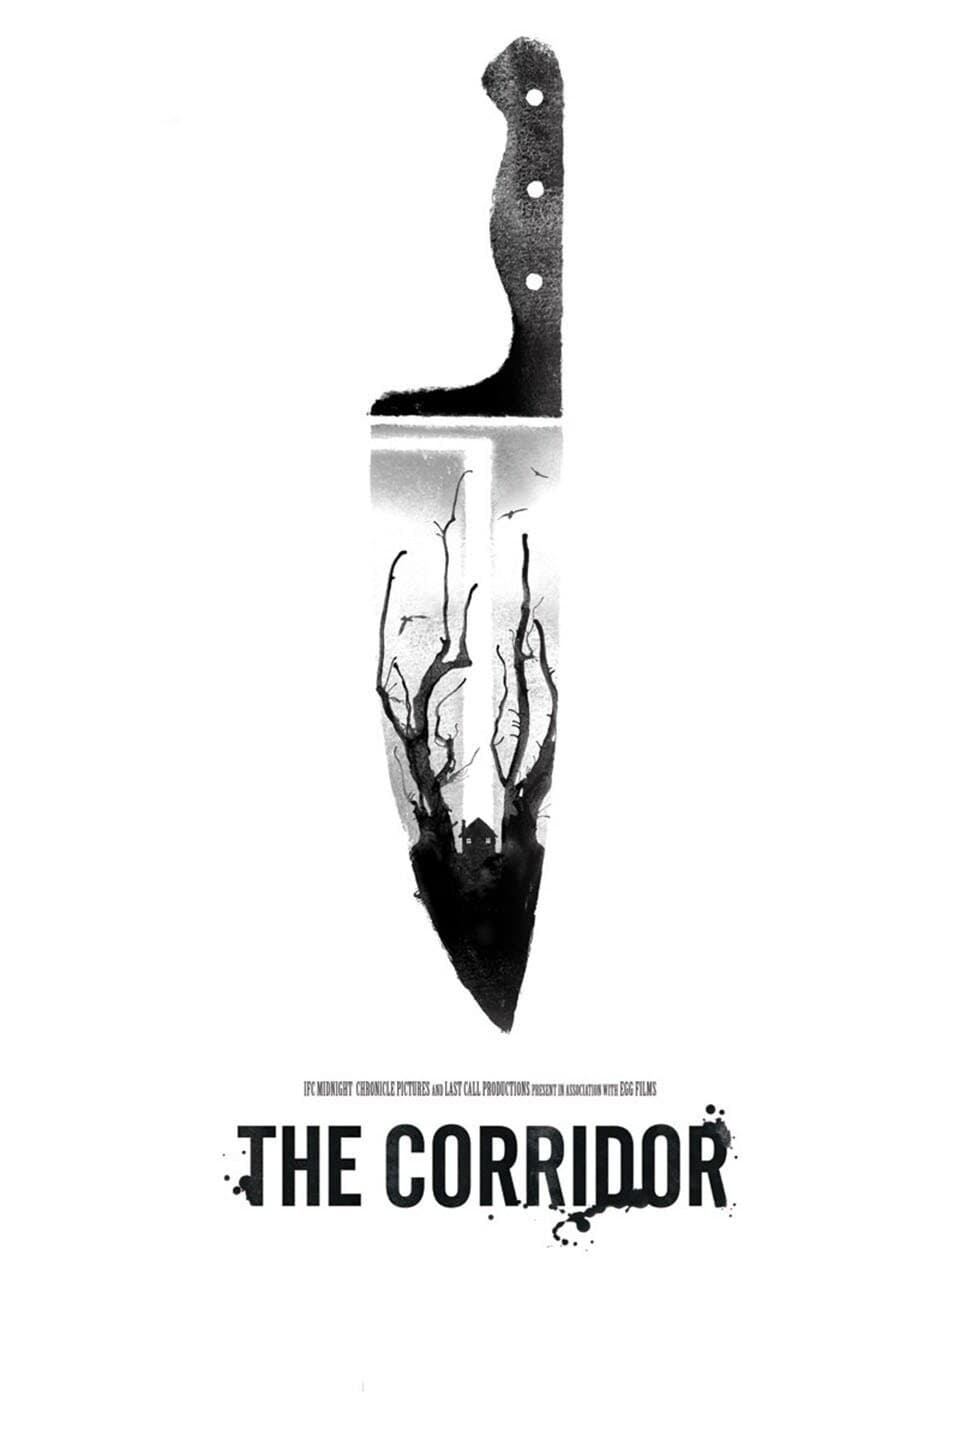 The Corridor film